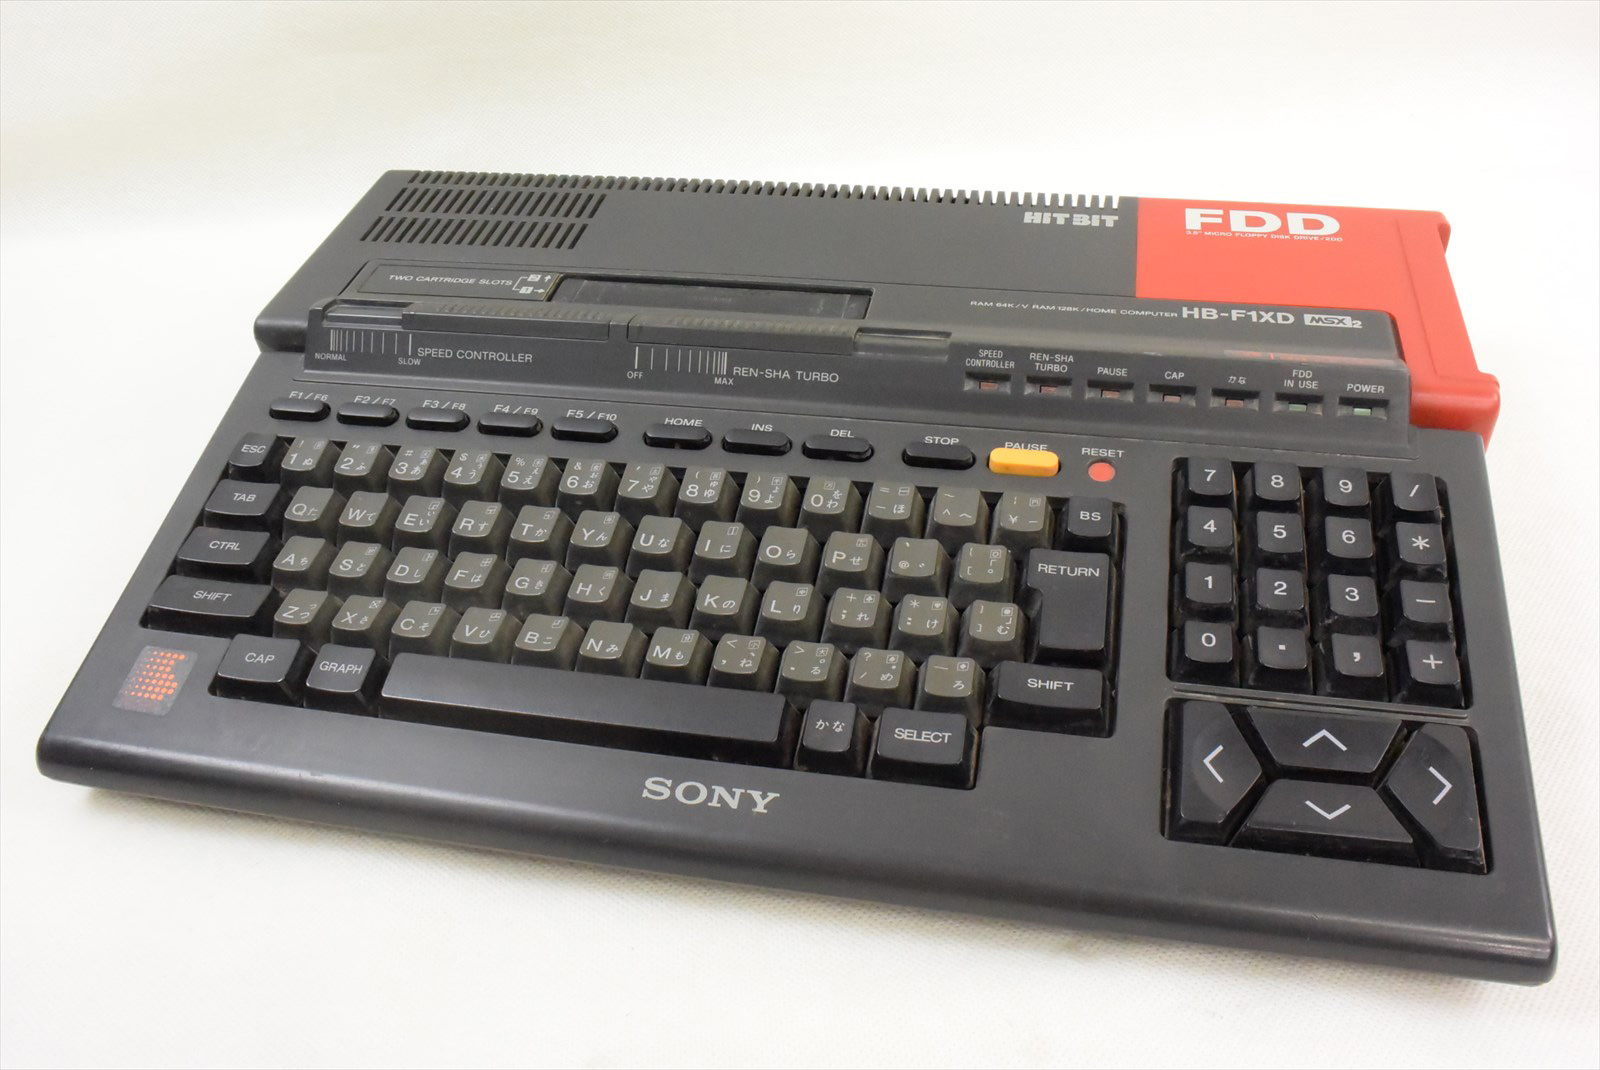 MSX2 HB-F1XD con la disquetera roja